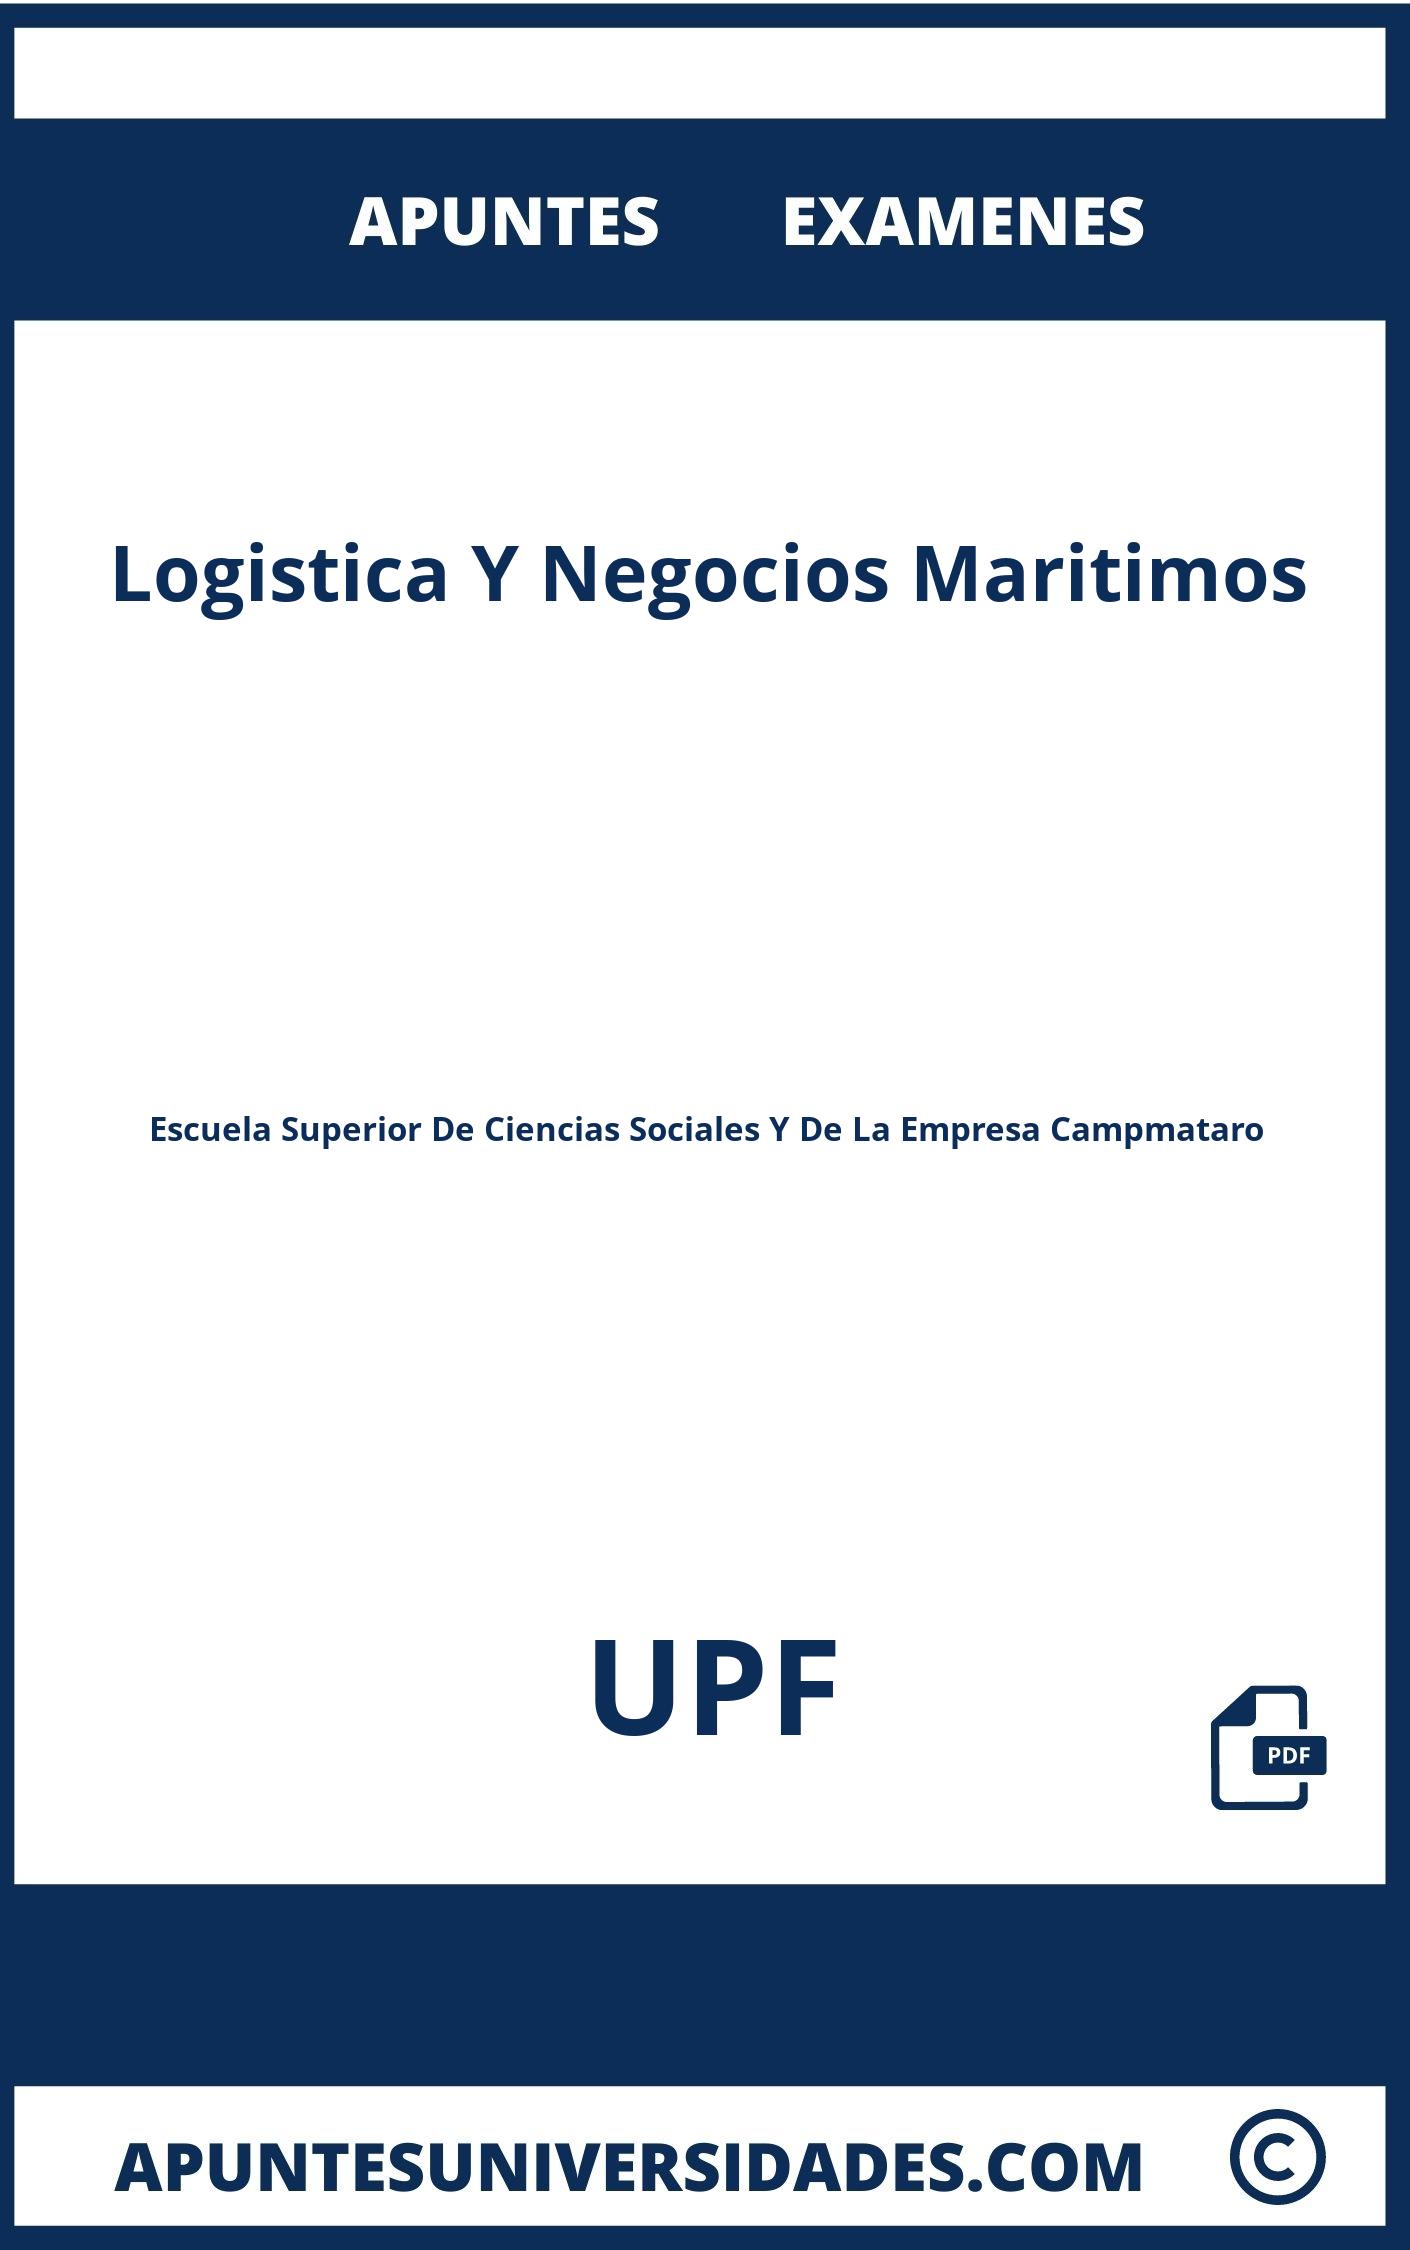 Examenes y Apuntes Logistica Y Negocios Maritimos UPF